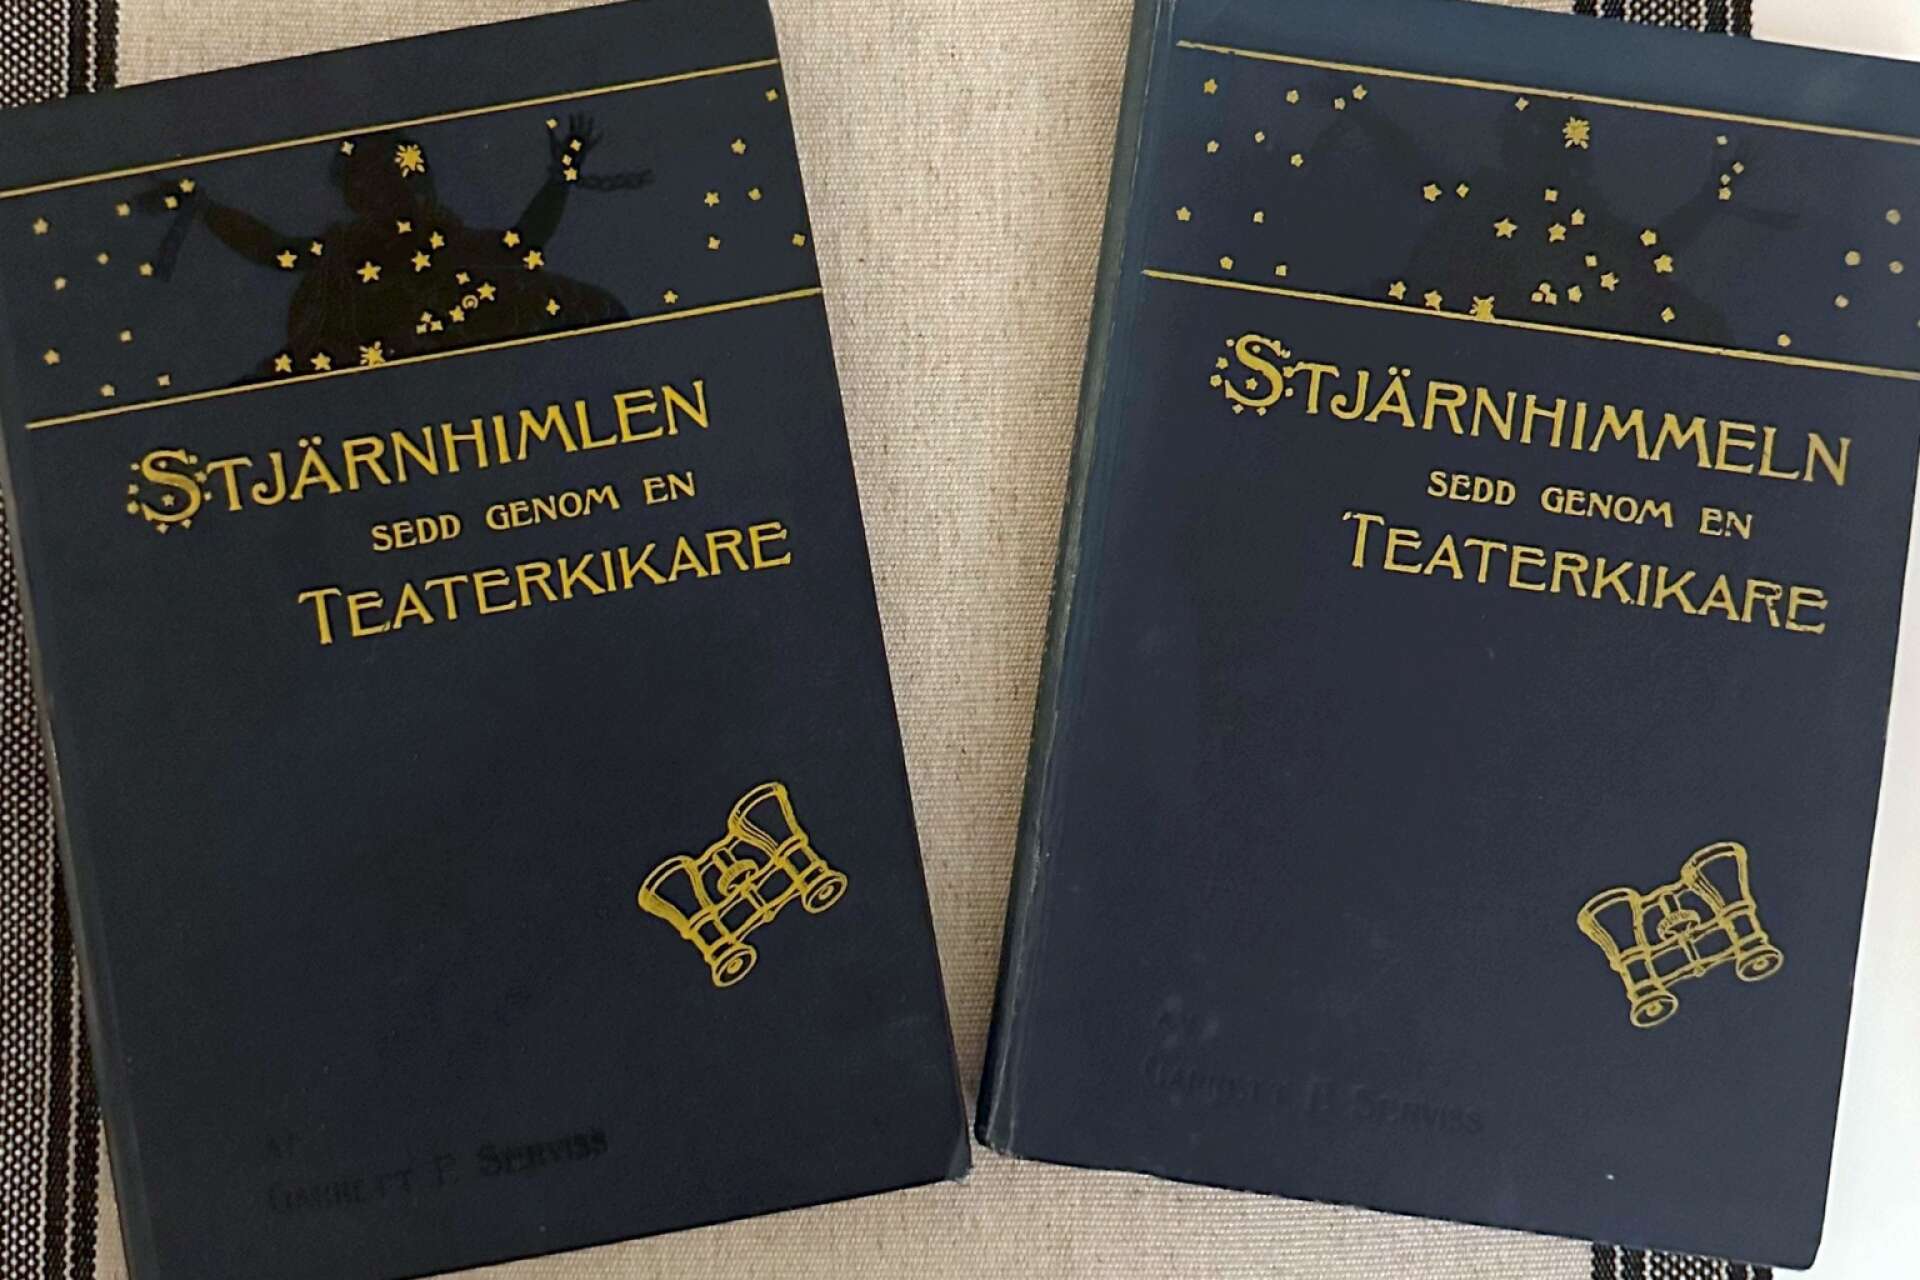 Nu har Emil Ingmar två exemplar av boken från 1902 som inspirerade hans nya skiva. Observera de olika stavningarna. 